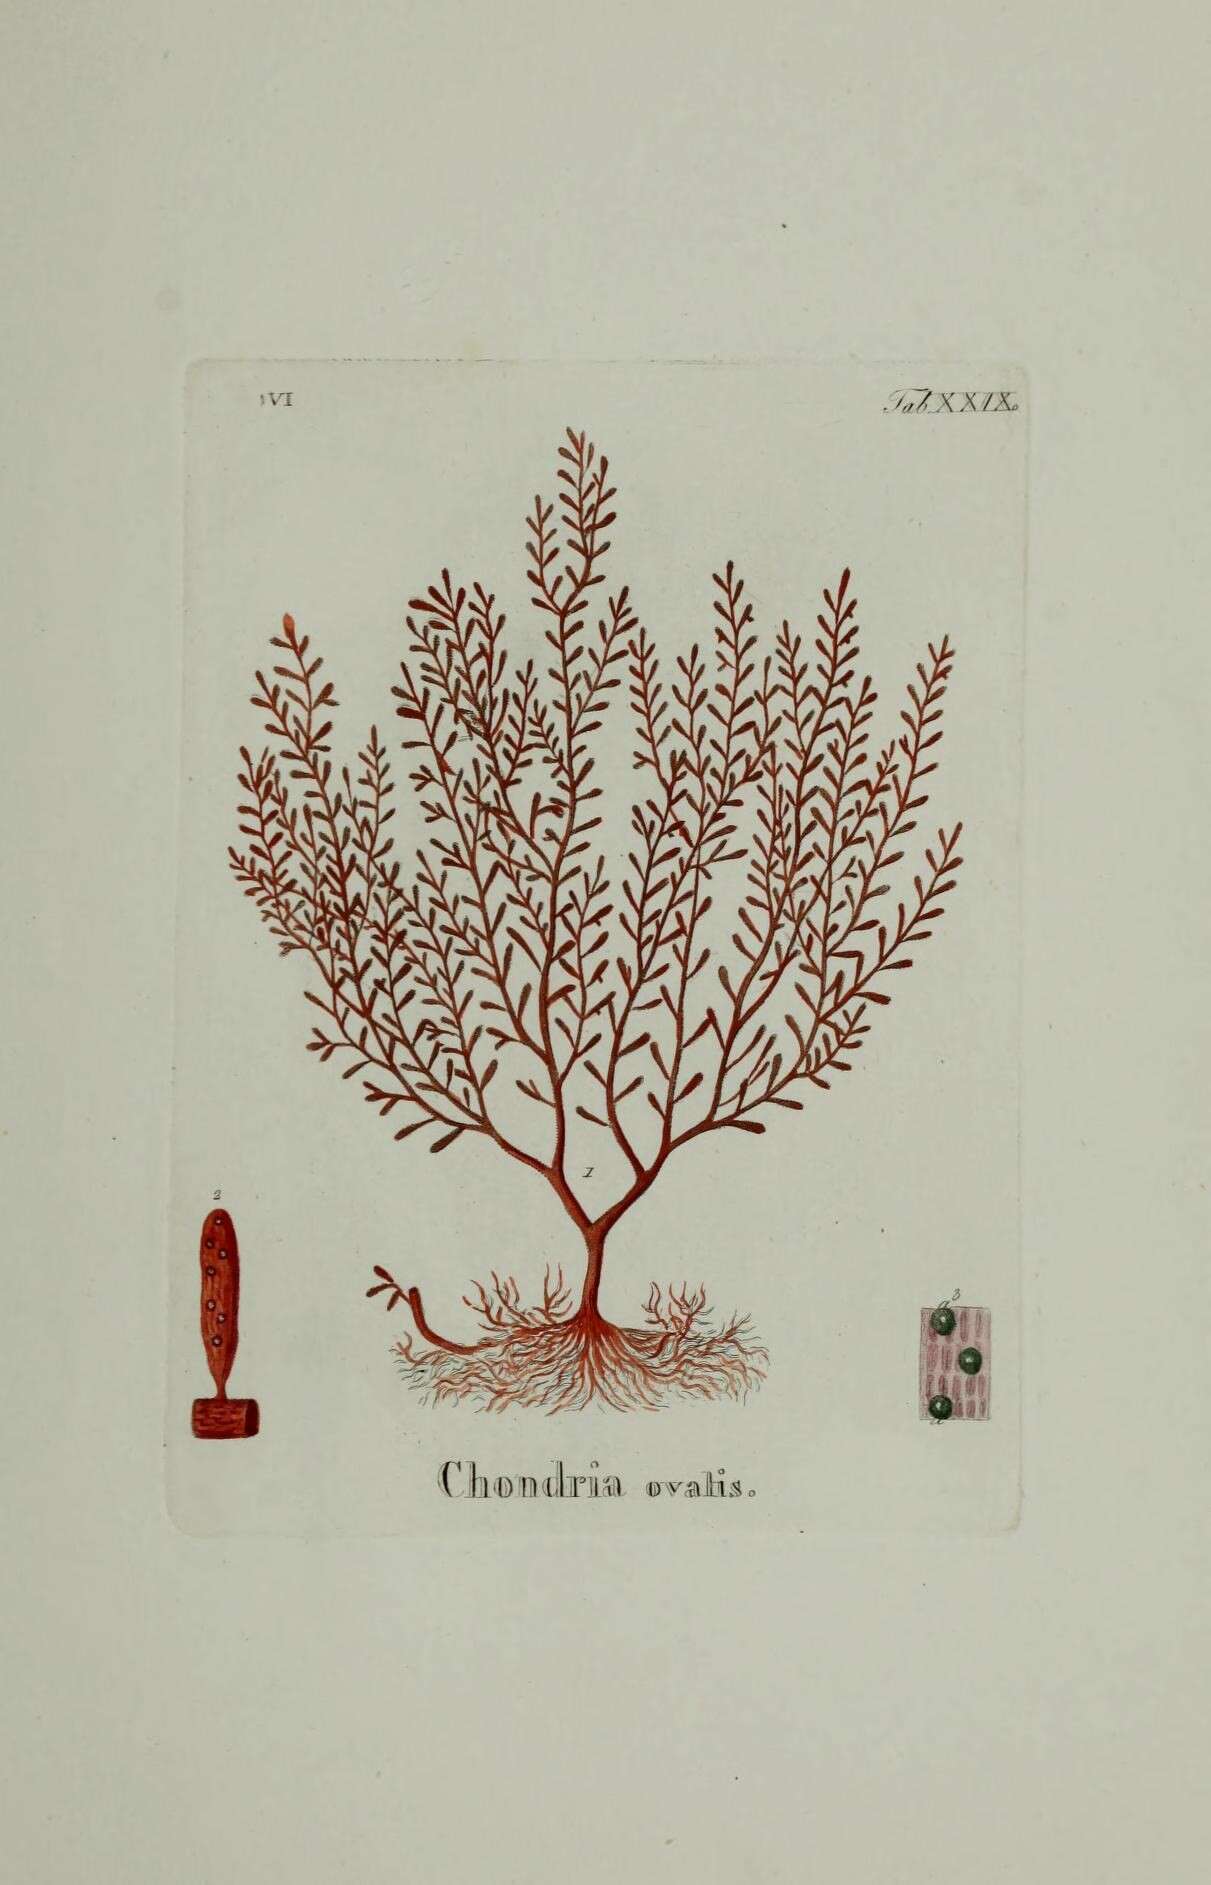 Image of Gastroclonium ovatum